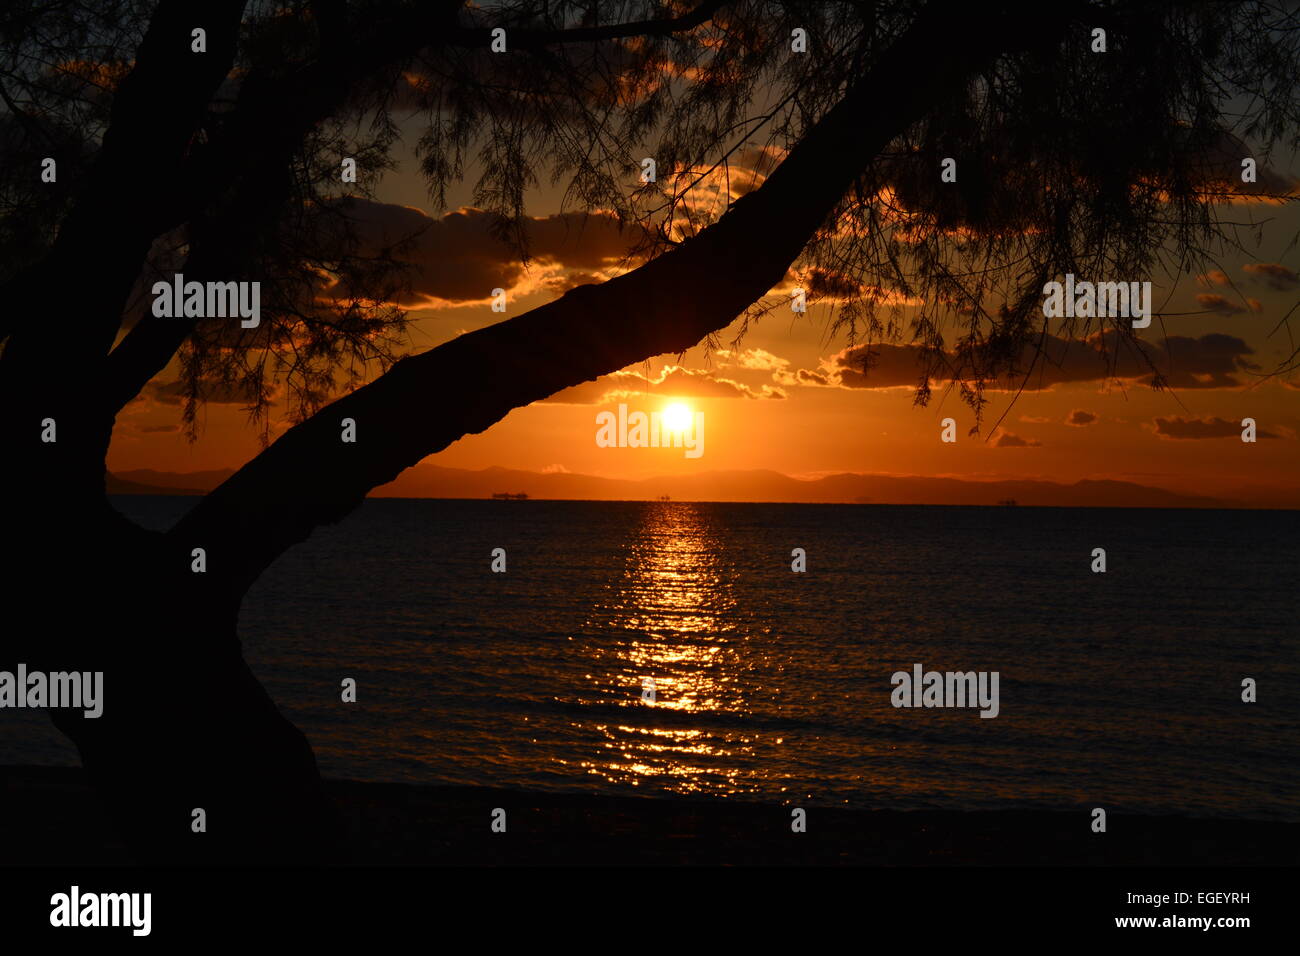 Magnifique coucher de soleil à la plage avec bel arbre Banque D'Images